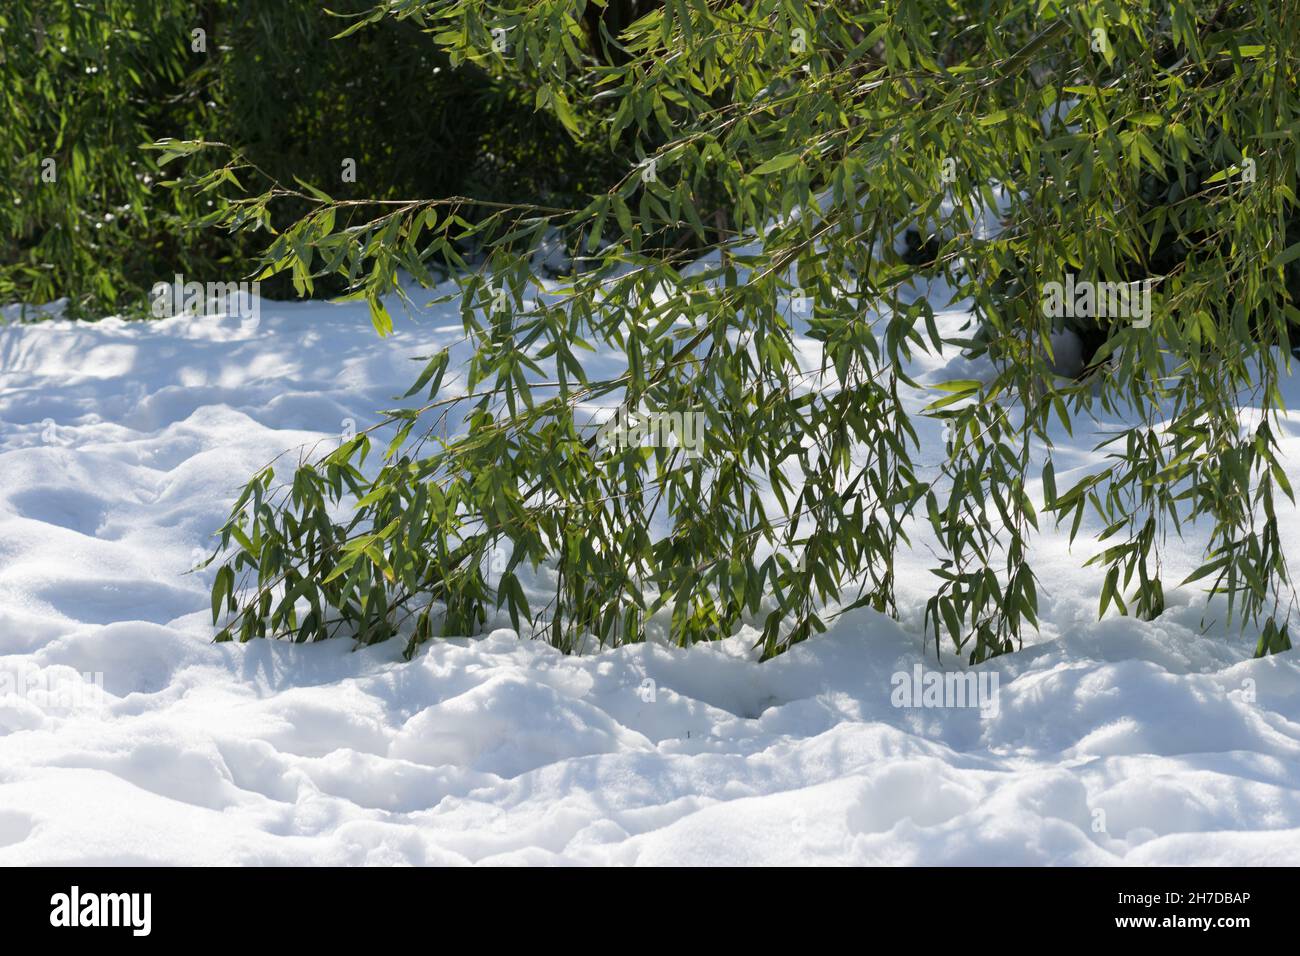 Äste verbeugten Bambus, der an einem sonnigen Tag auf dem weißen Schnee lag Stockfoto